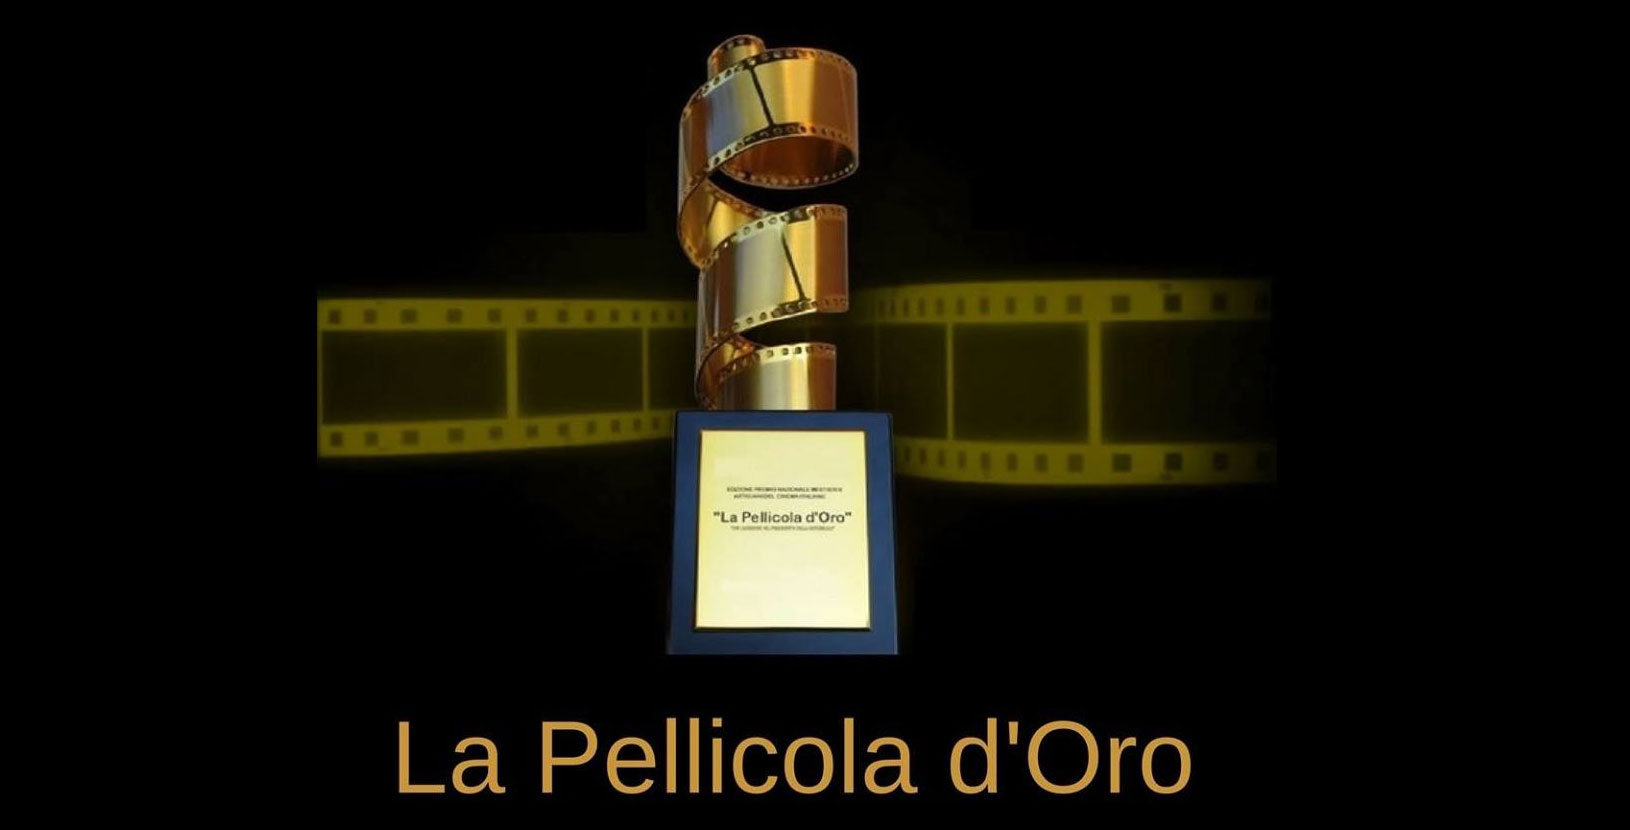 La Pellicola D'Oro 2019, i Premi assegnati alla IX edizione